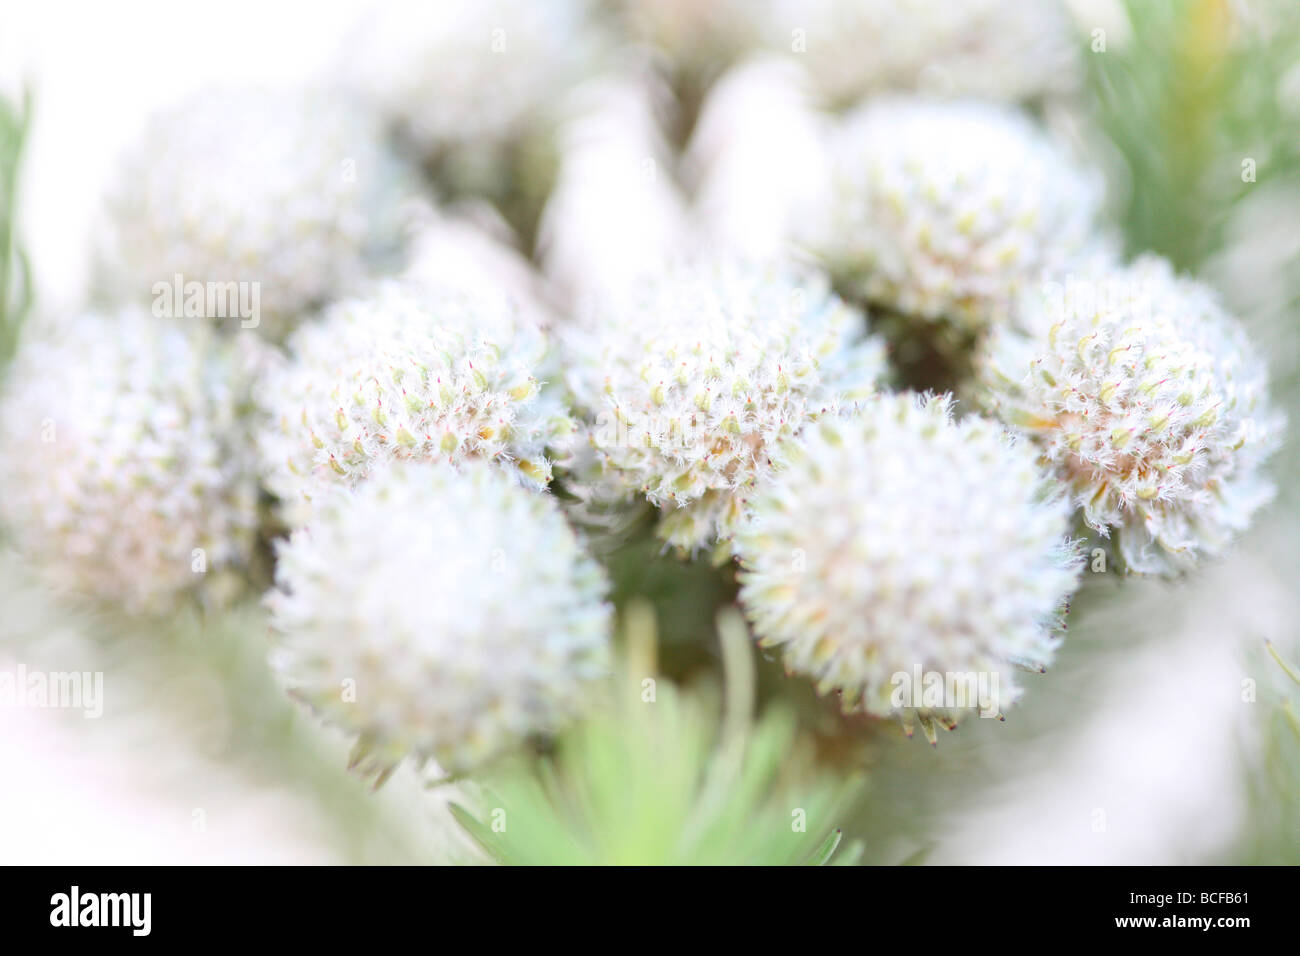 schöne full-Frame-Bild von Brunia Blütenköpfchen Kunstfotografie Jane Ann Butler Fotografie JABP426 Stockfoto